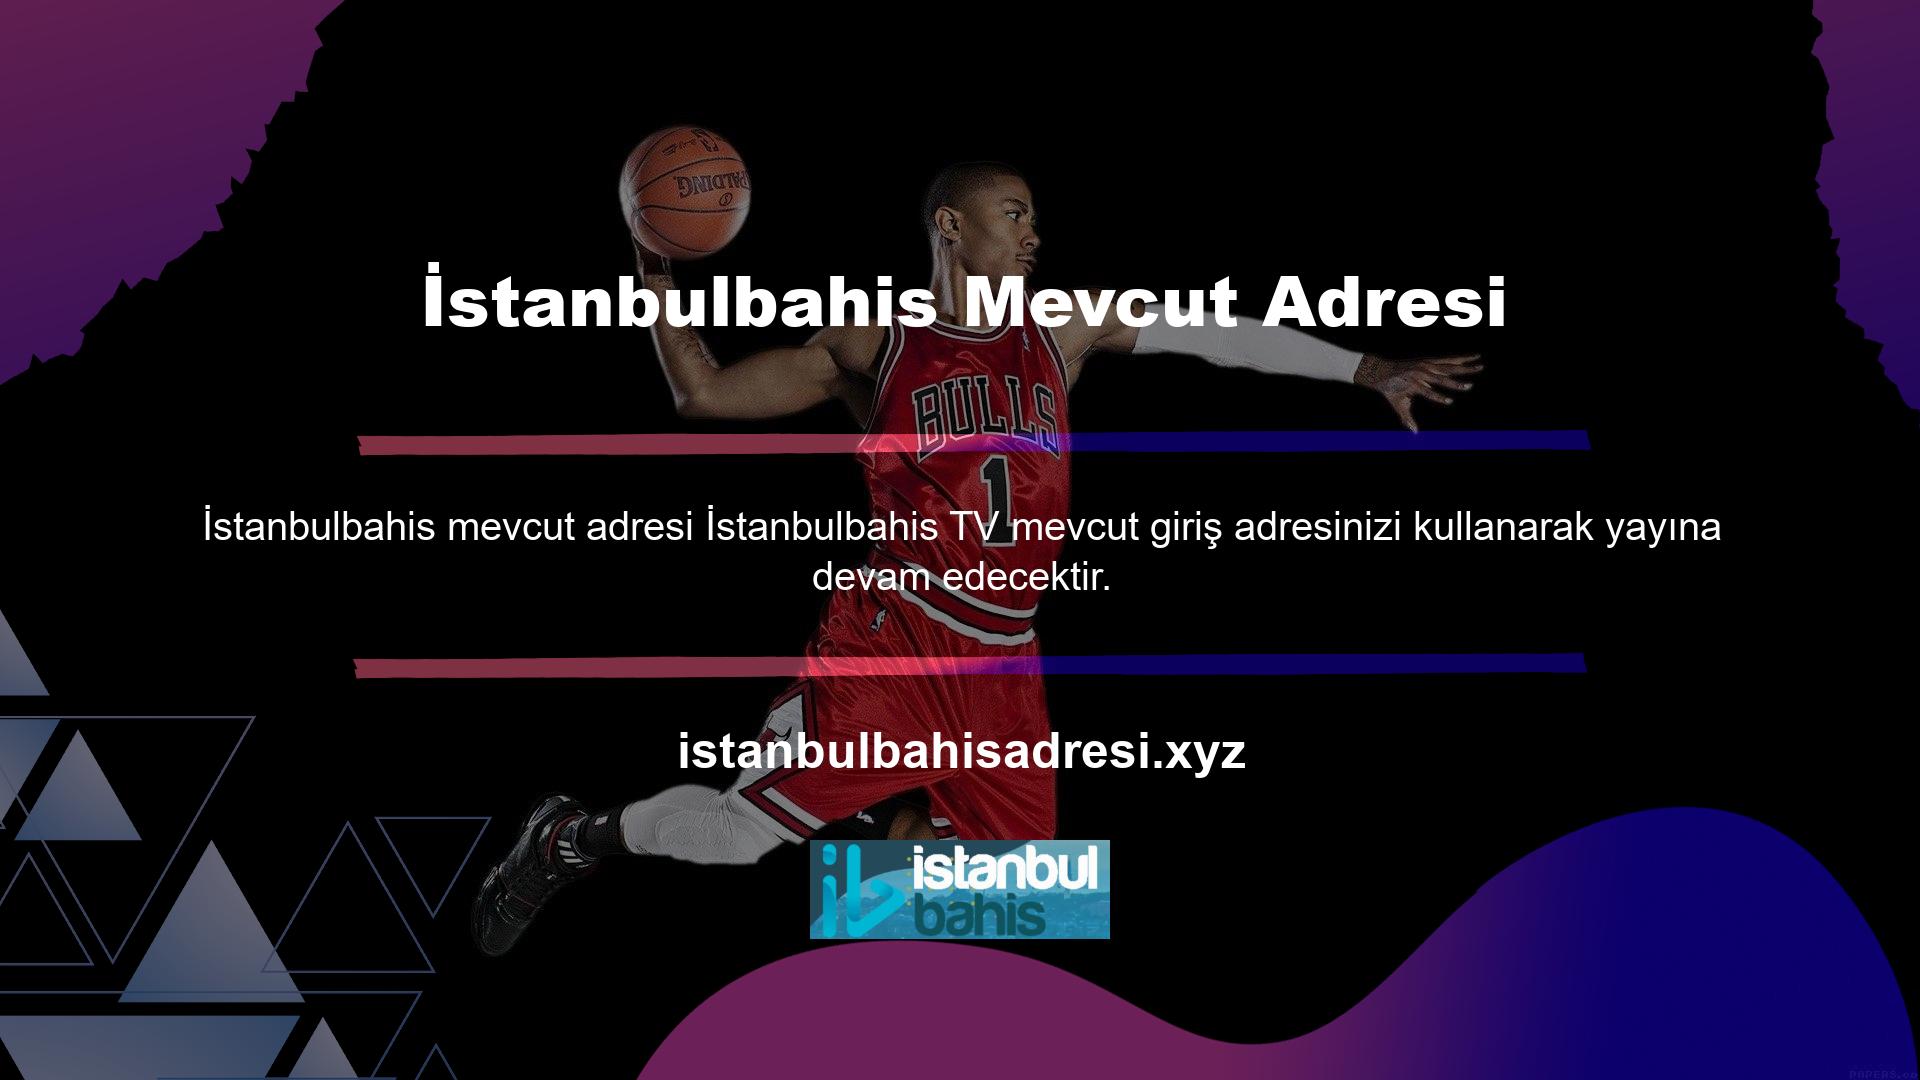 Ana sitenin alan adı adresi düzenli olarak bloke edildiği ve site yeni bir giriş adresi belirlediği için İstanbulbahis TV'nin giriş adresi de zaman zaman değişmektedir